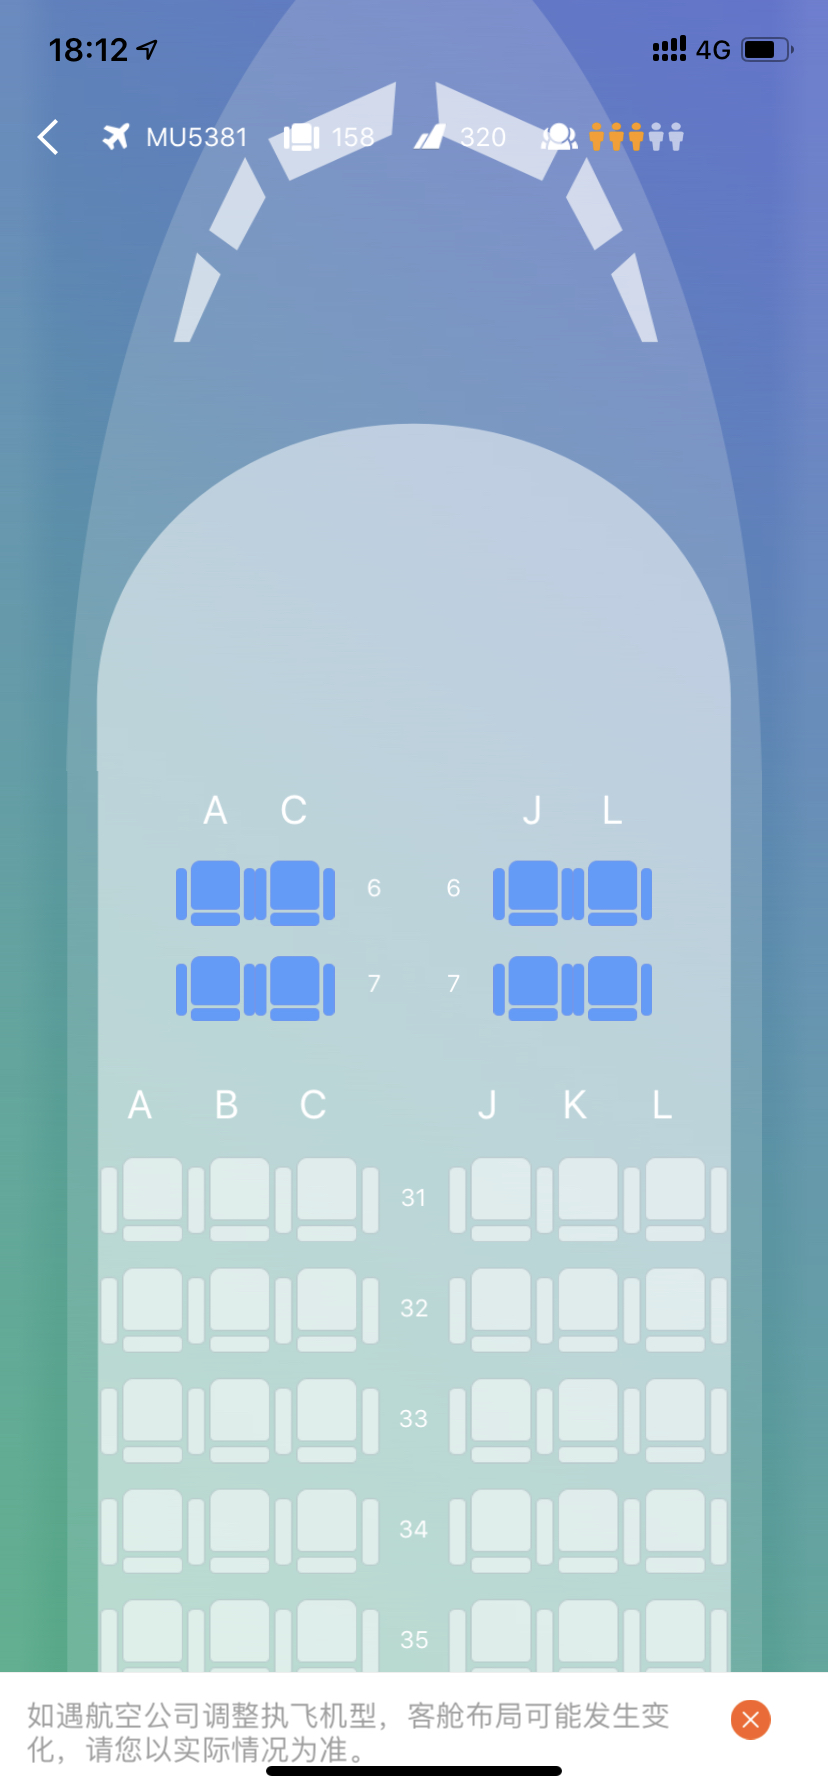 已解决空客320公务舱选座这种两排的公务舱6排是不是很窄啊